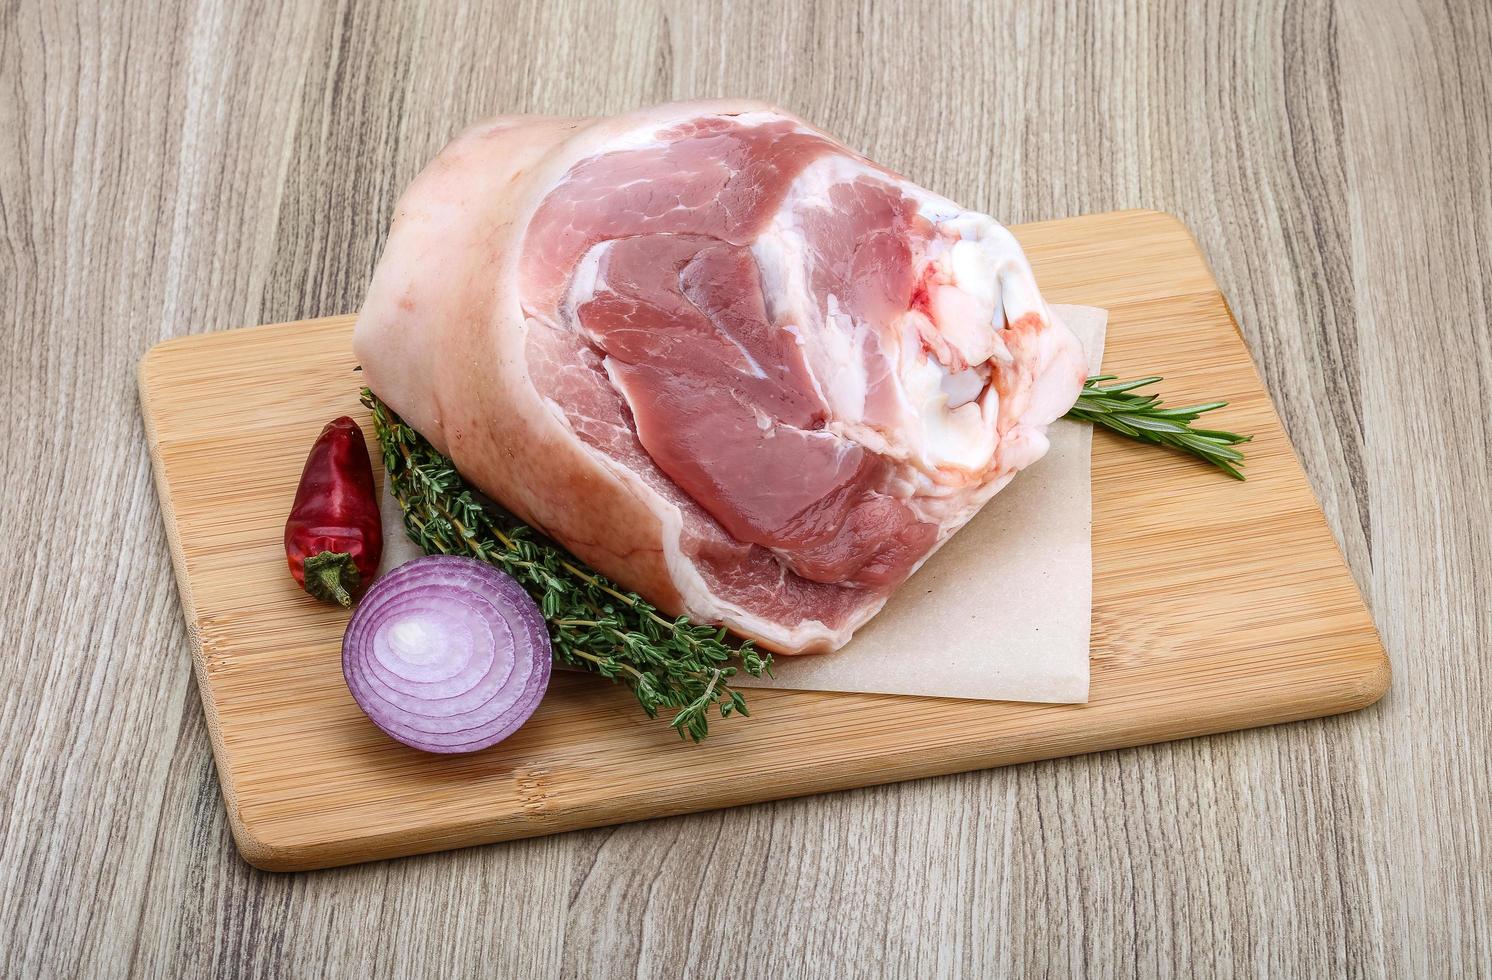 Raw pork knuckle photo